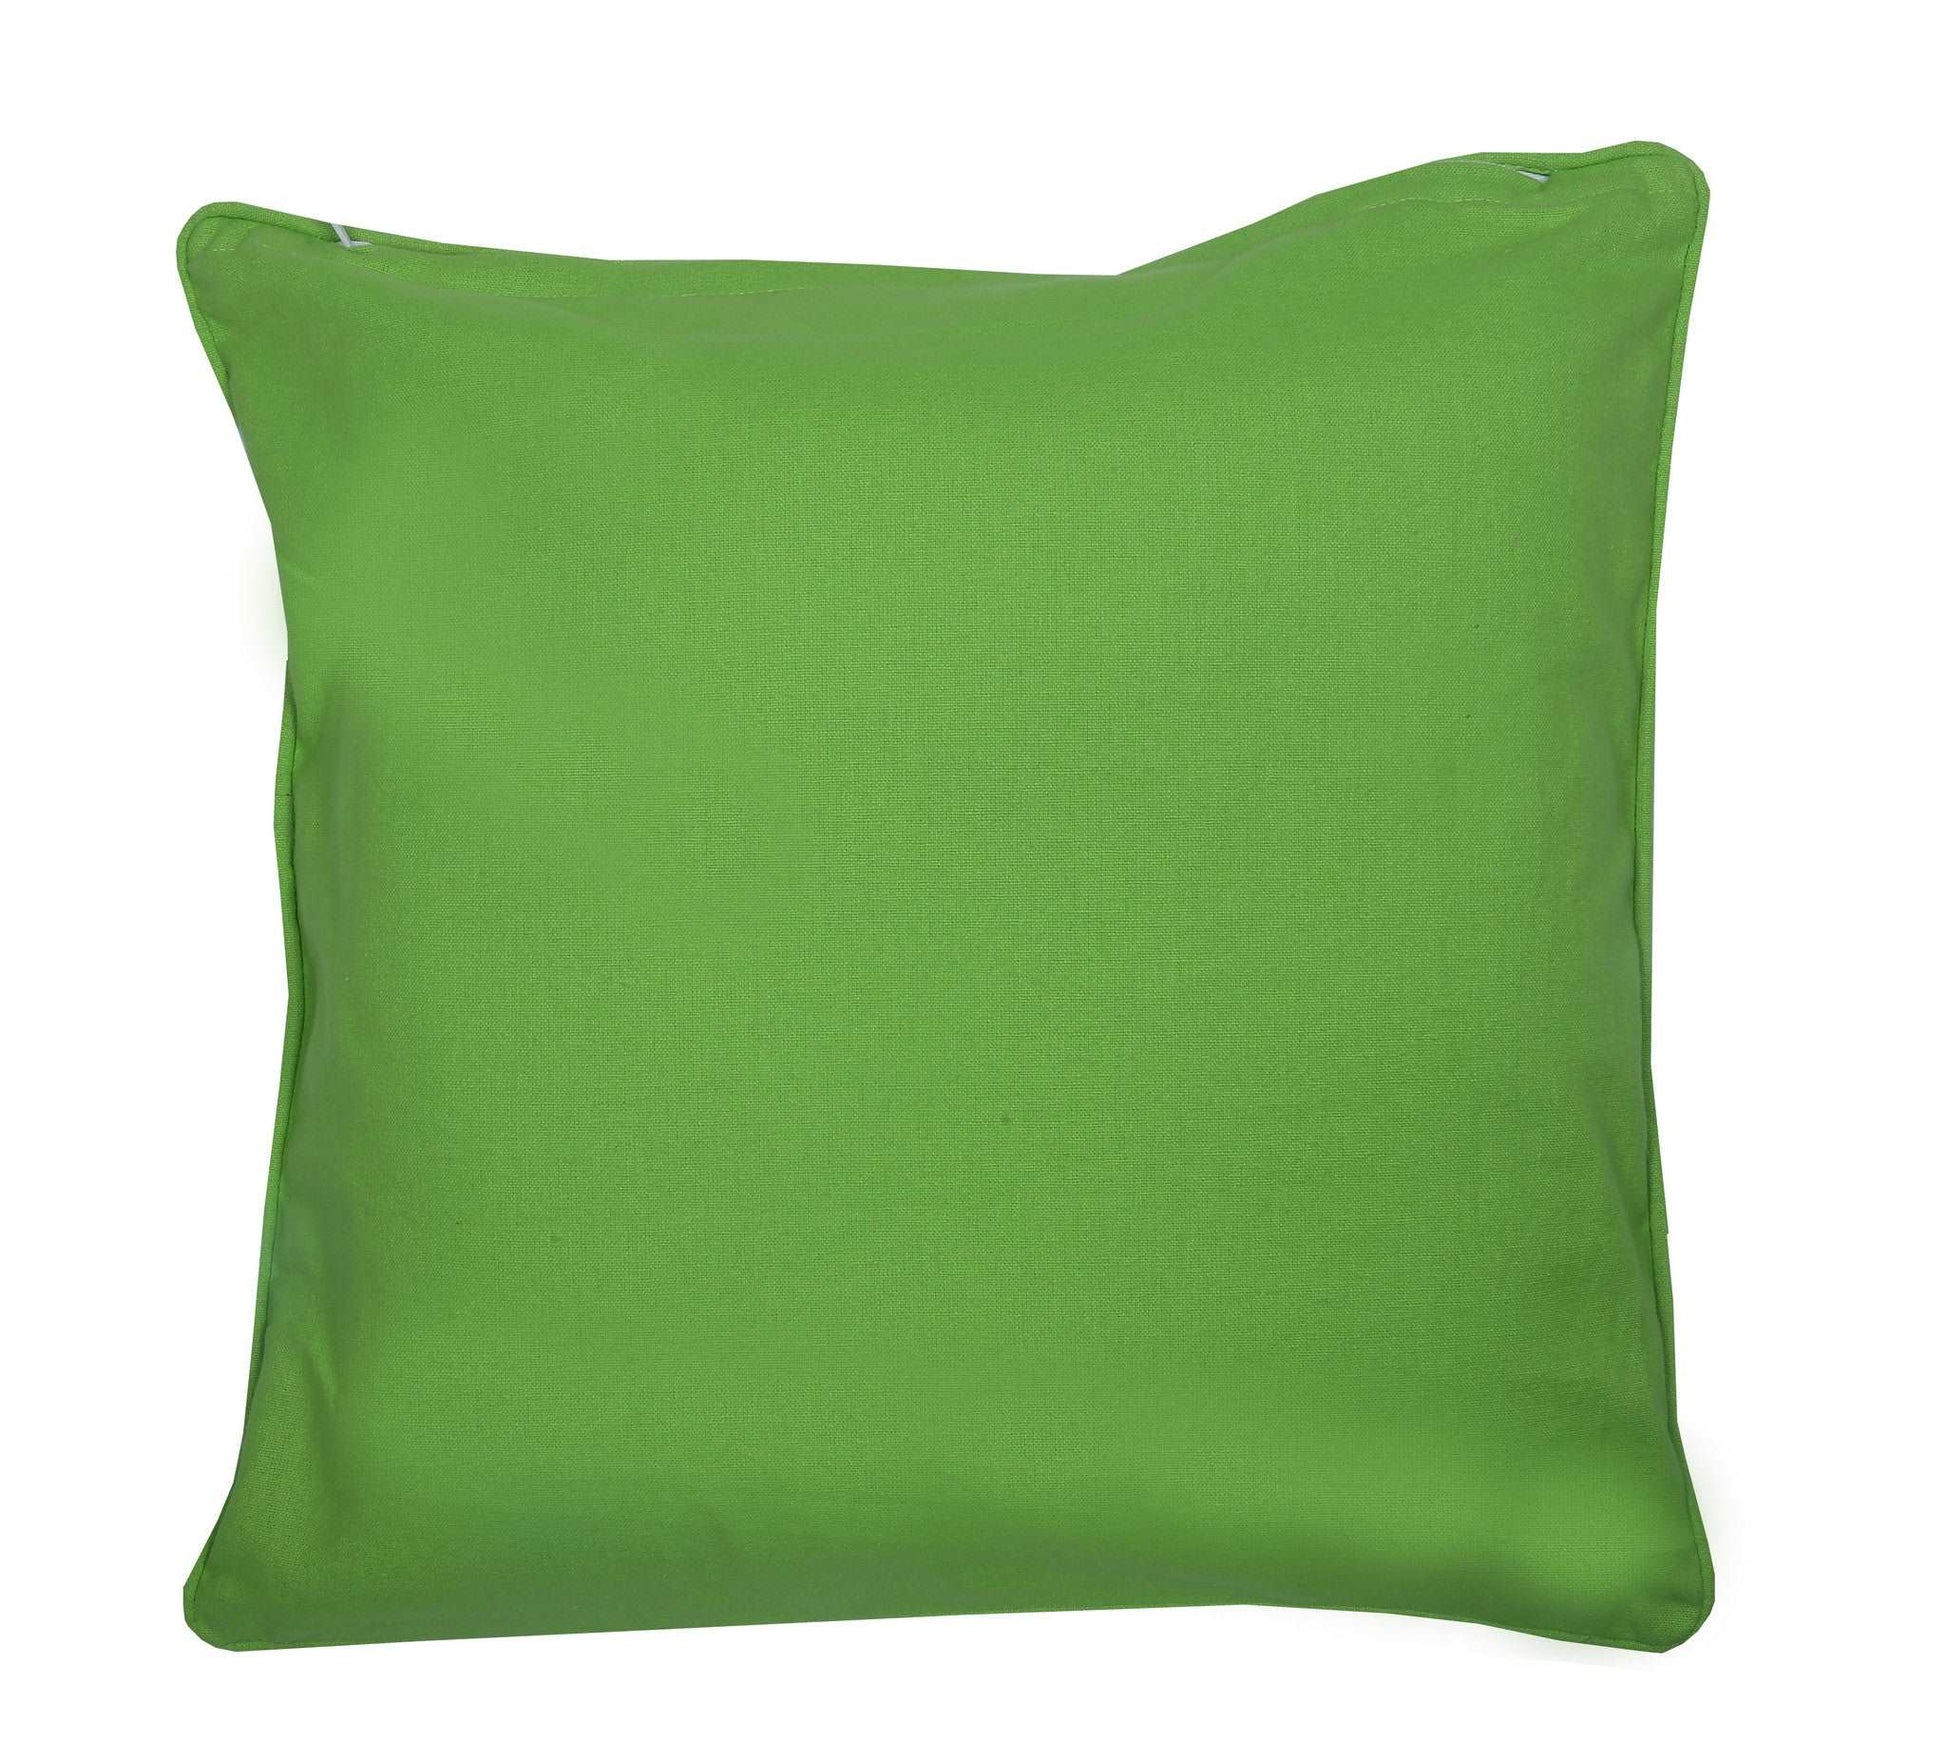 Cushion Cover - Star Green